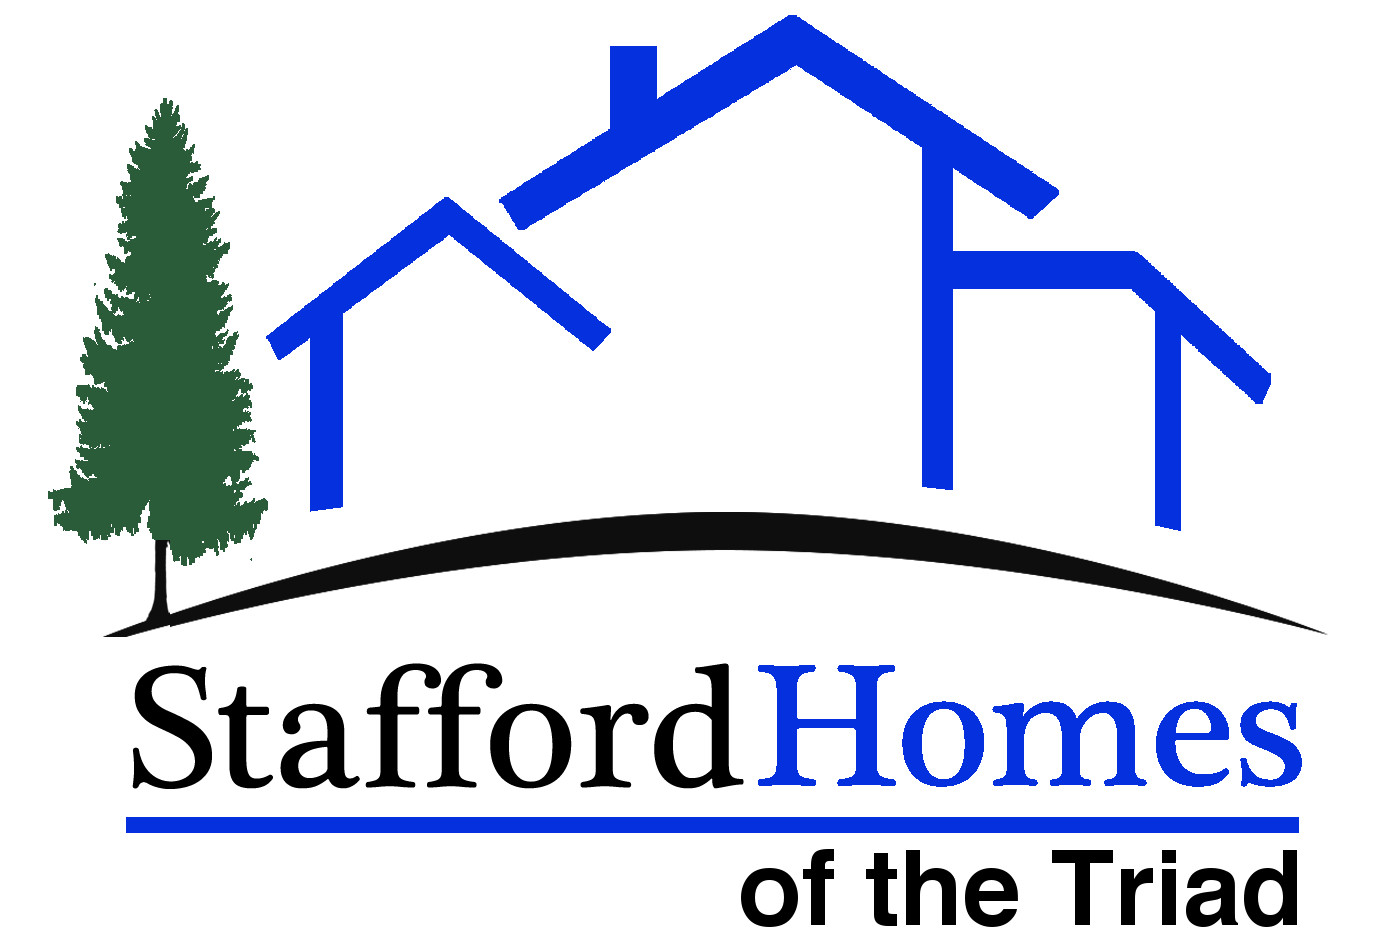 Stafford Logo